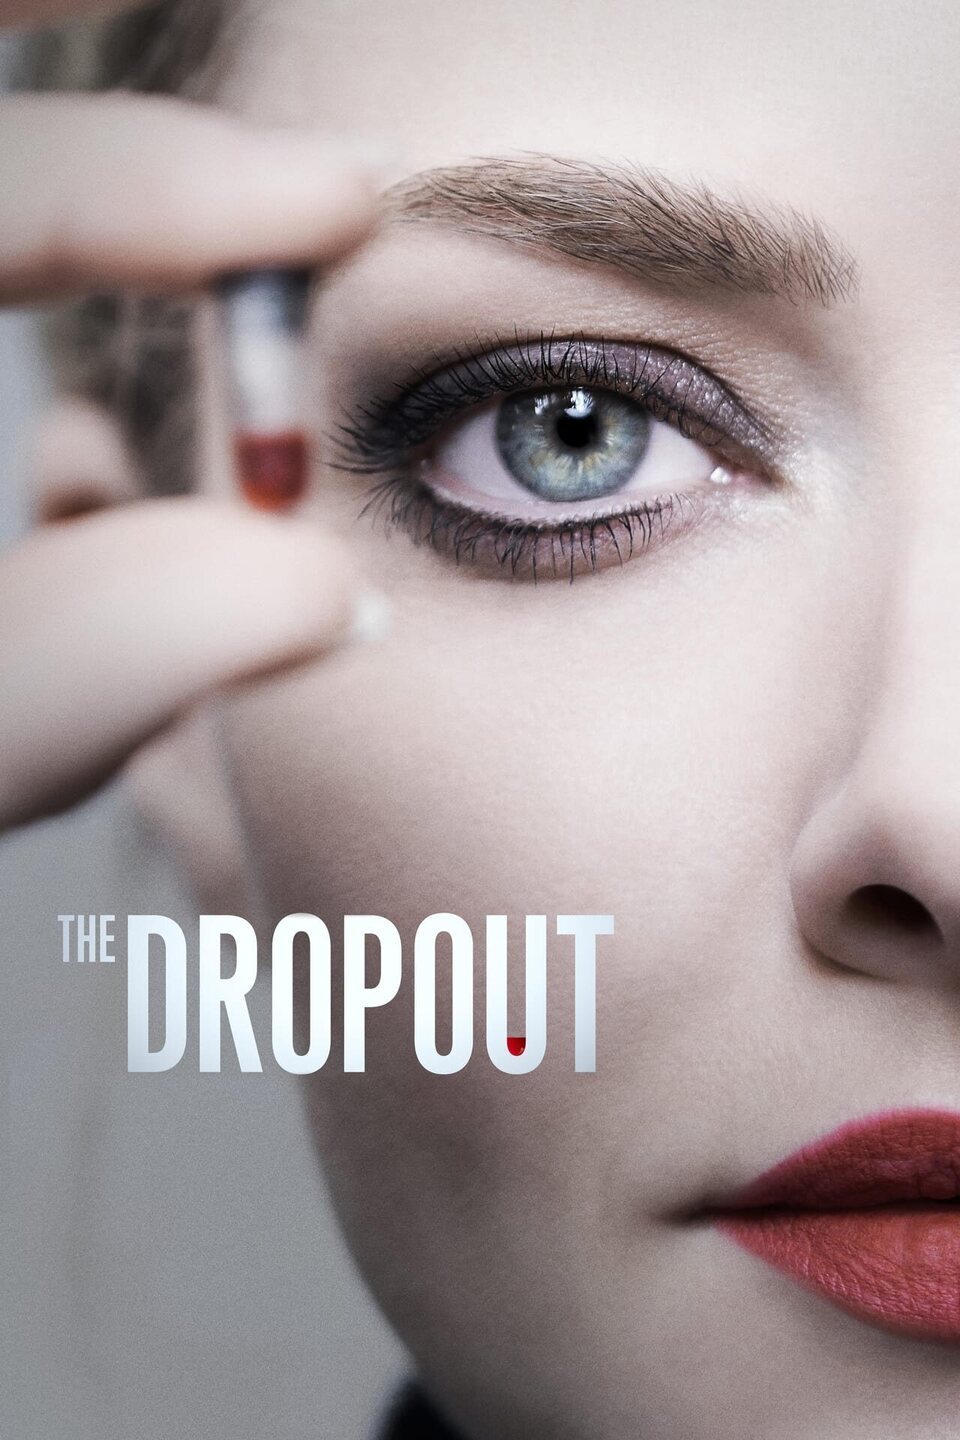 Cartel de The Dropout: Auge y caída de Elizabeth Holmes - Temporada 1